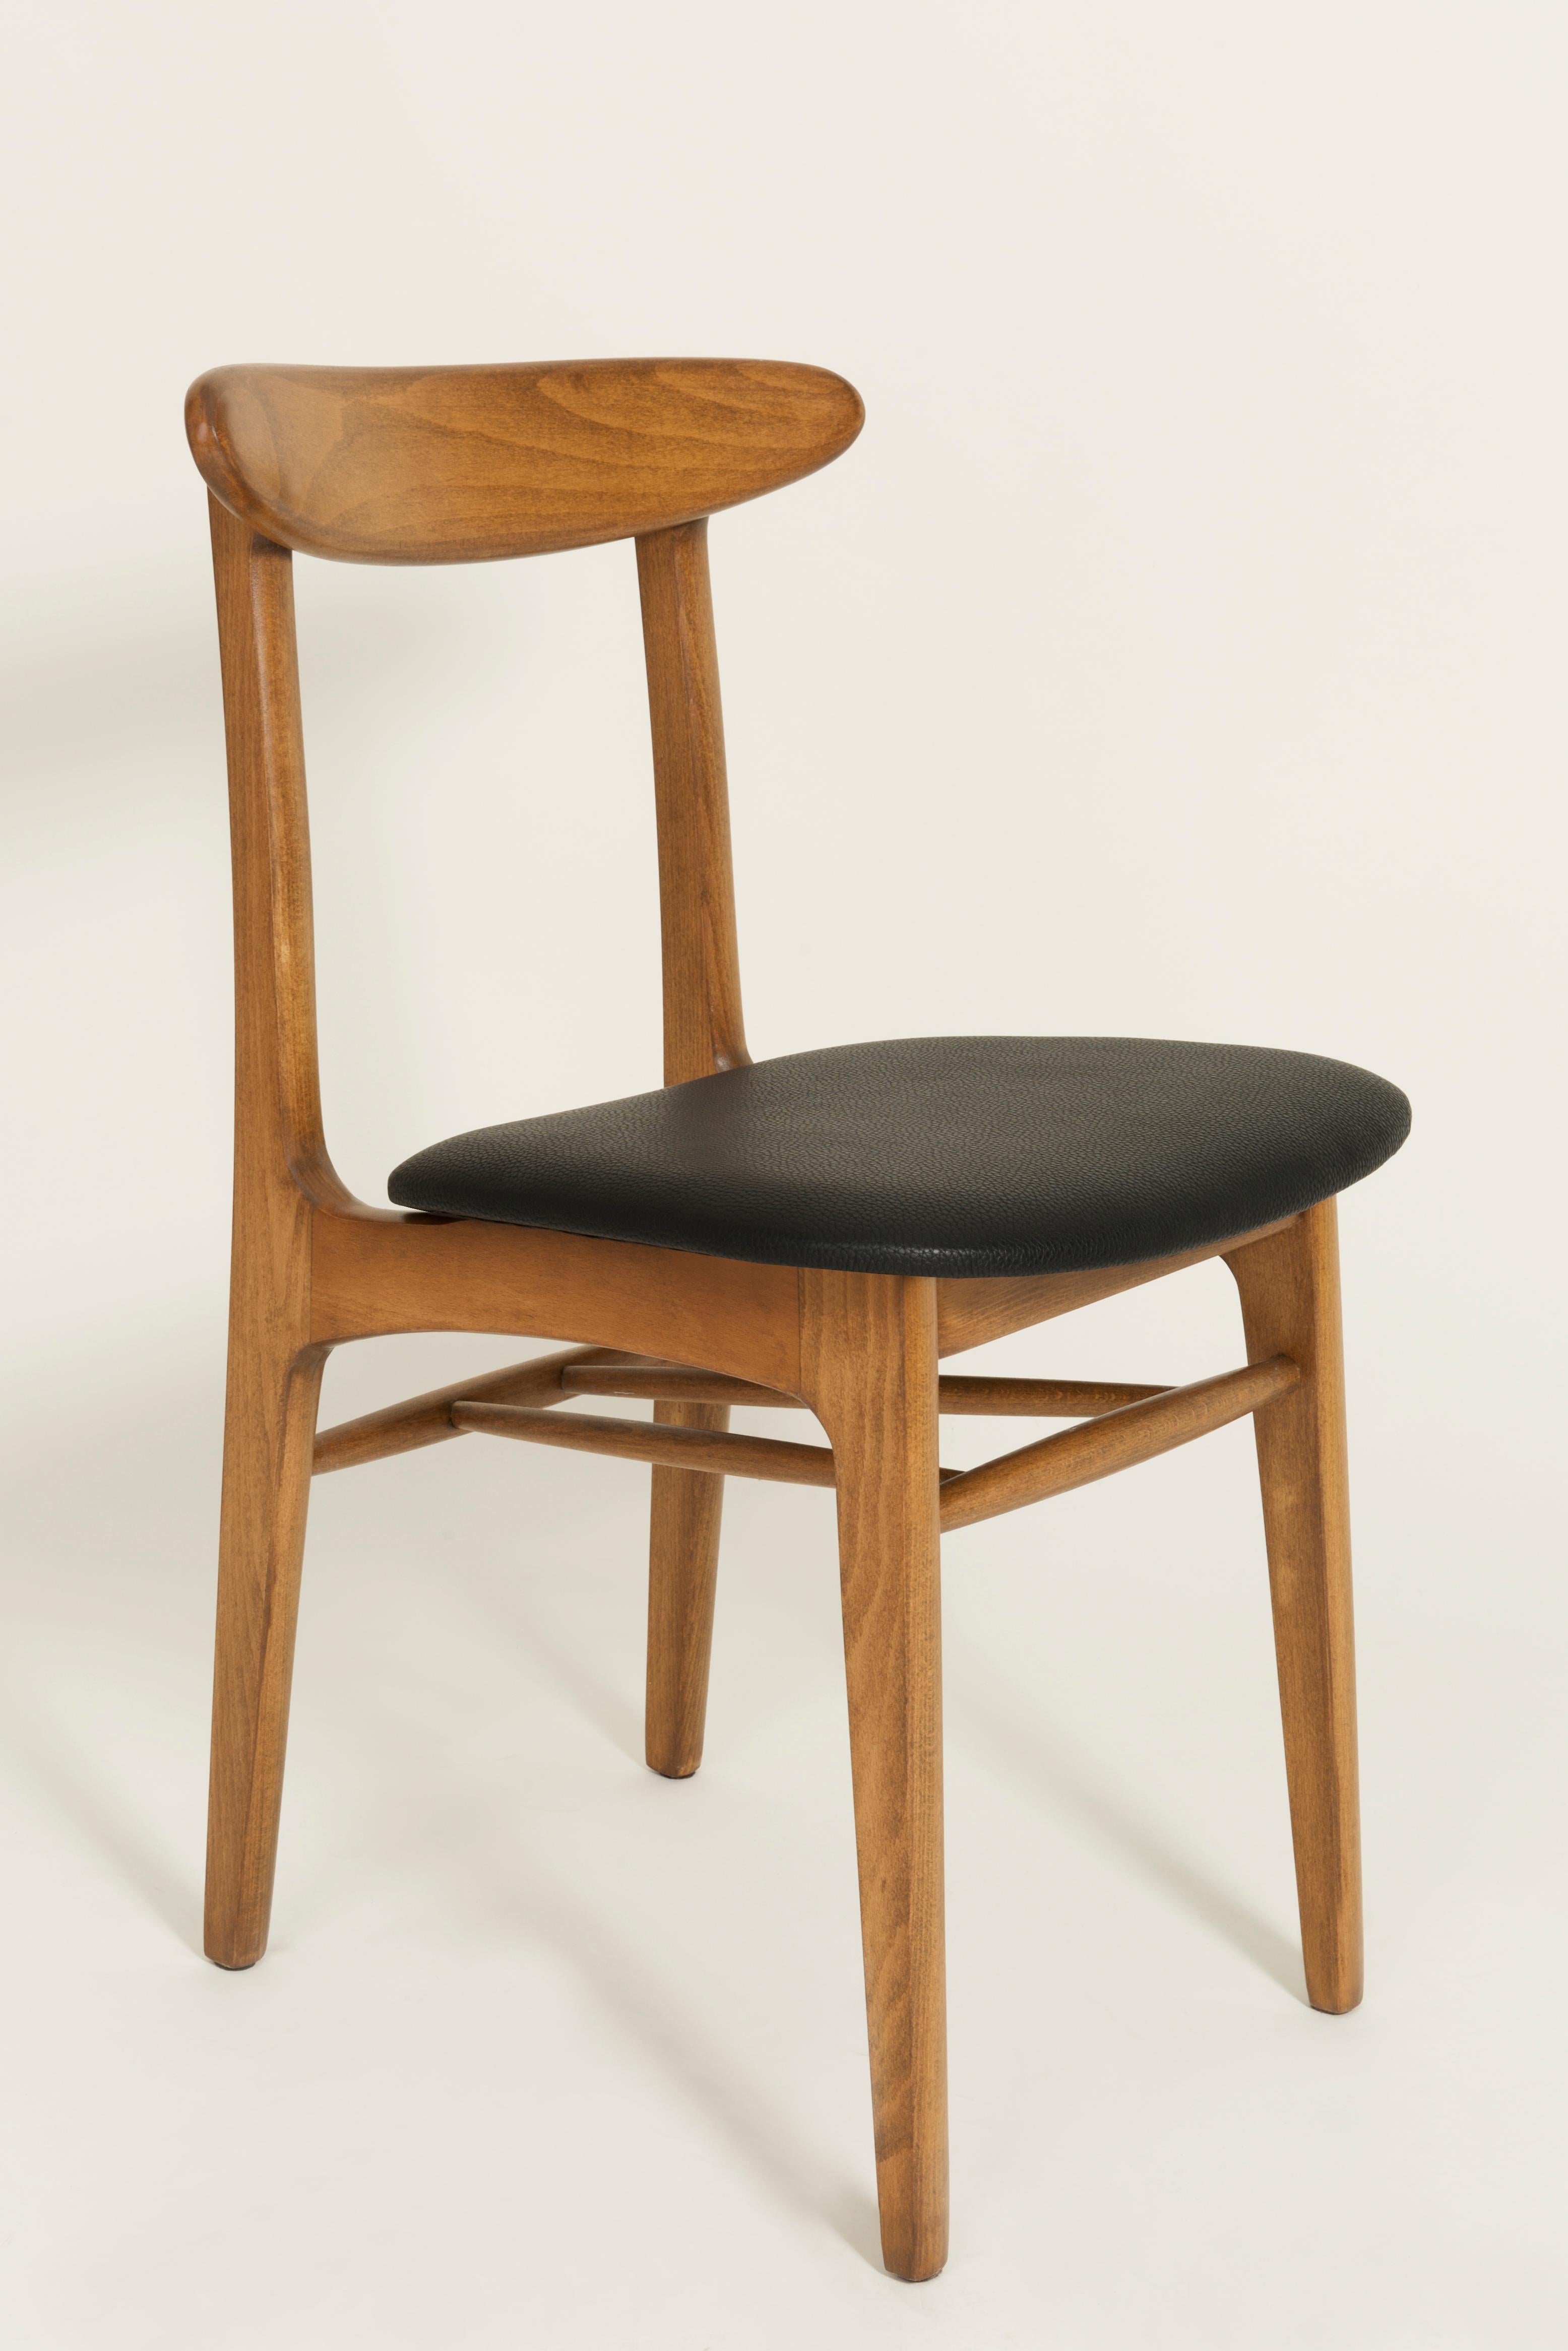 Die Stühle des Typs 5908, entworfen in den 1960er Jahren von Rajmund Teofil Halas, sind eines der bekanntesten Projekte des polnischen Designs.

Die Stühle haben eine einfache, modernistische Silhouette. Sie zeichnen sich durch stromlinienförmige,